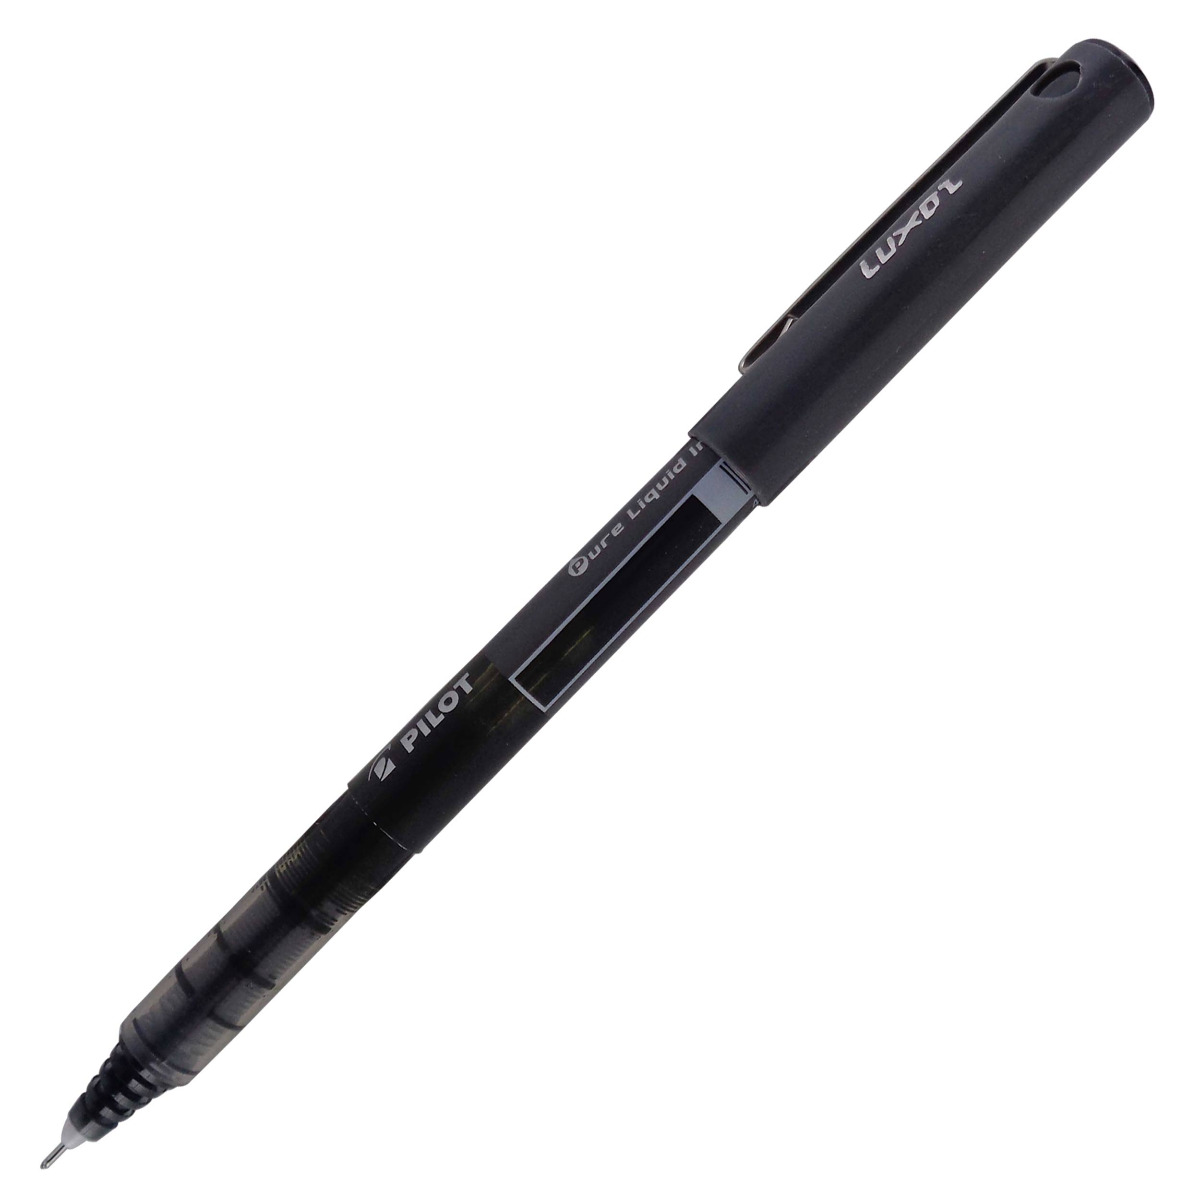 Pilot v5 Hi-Techpoint Black color liquid ink 0.5mm cap type gel pen Model: 13541